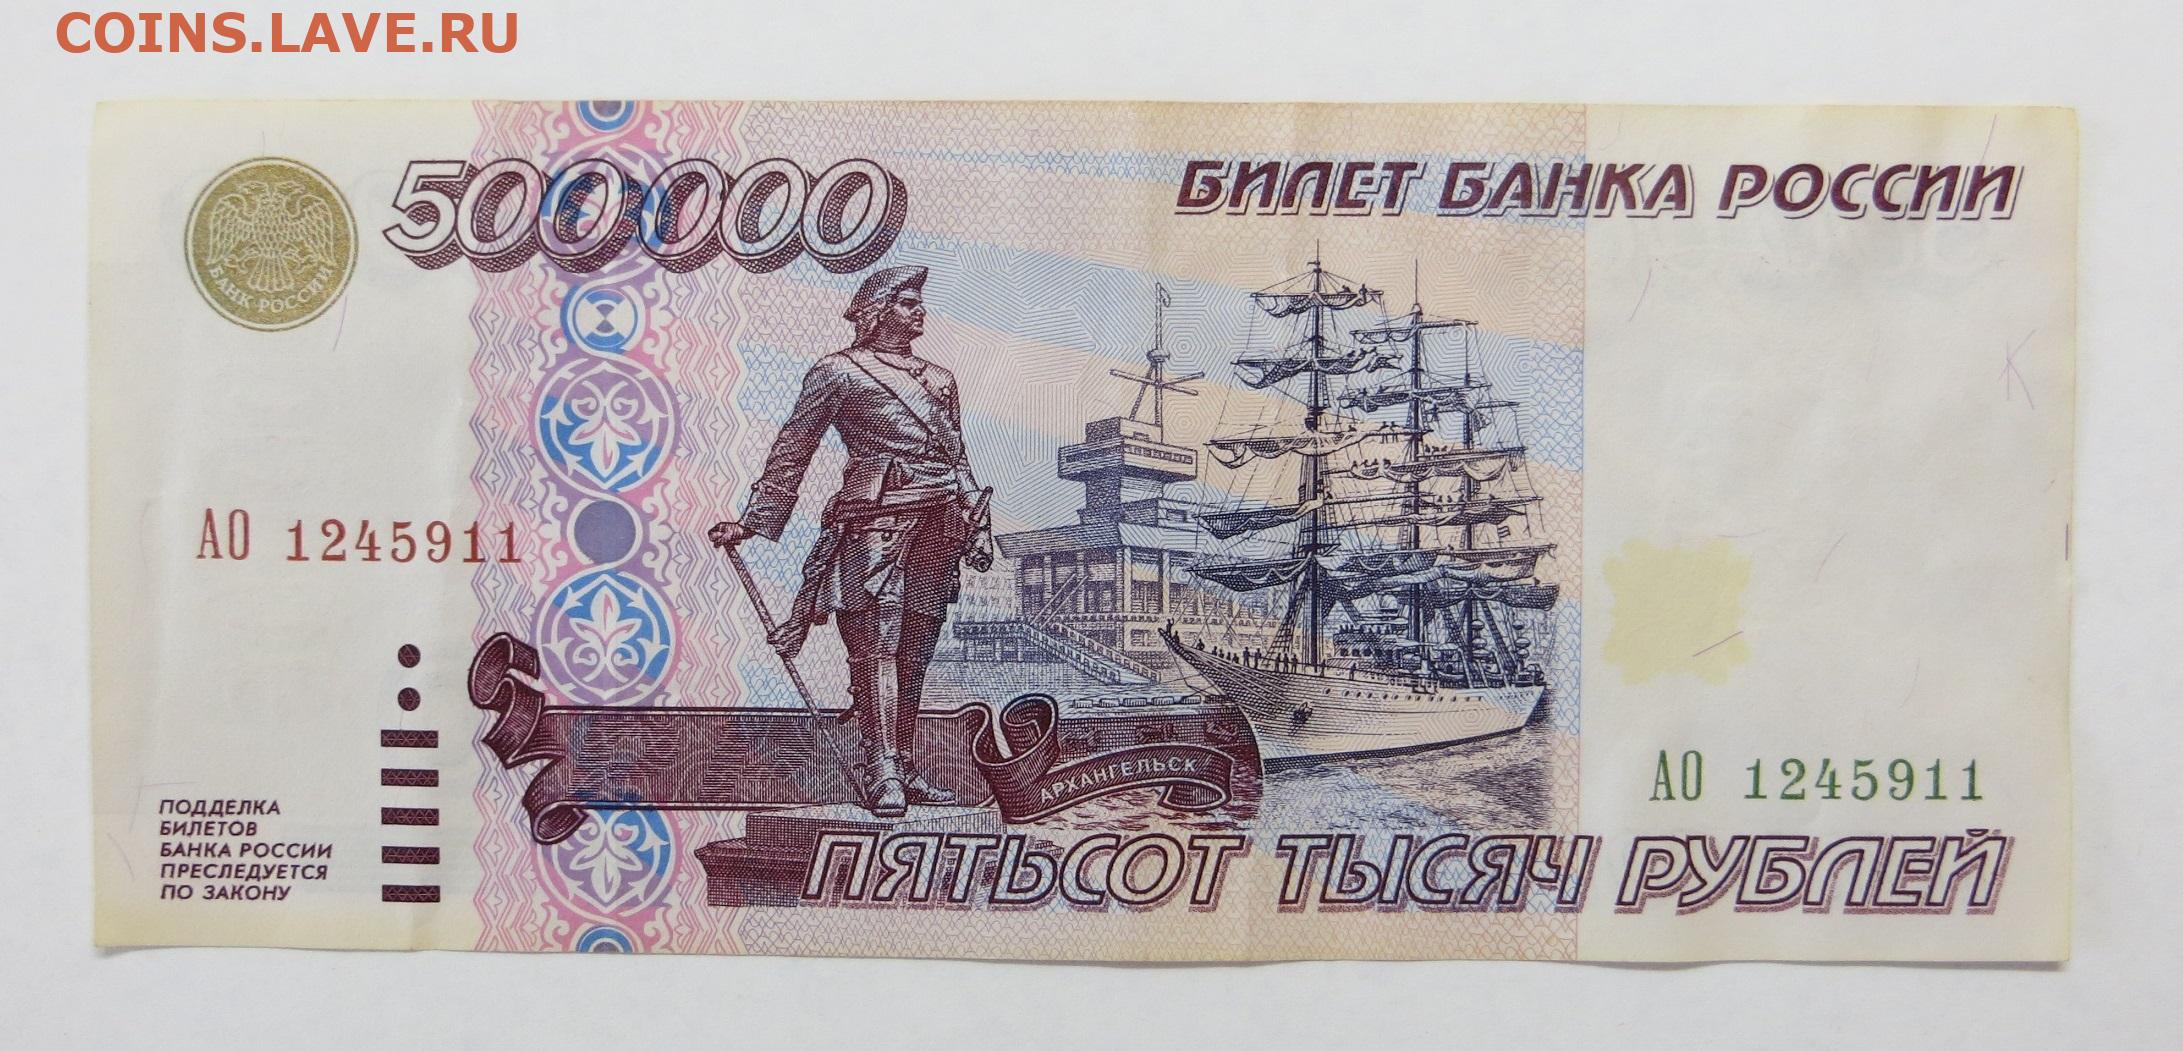 500 0 рублей. 500000 Рублей 1995 года. Купюра 500 000 рублей 1995. Бумажные деньги 1995 года. 500 000 Рублей 1995 года.